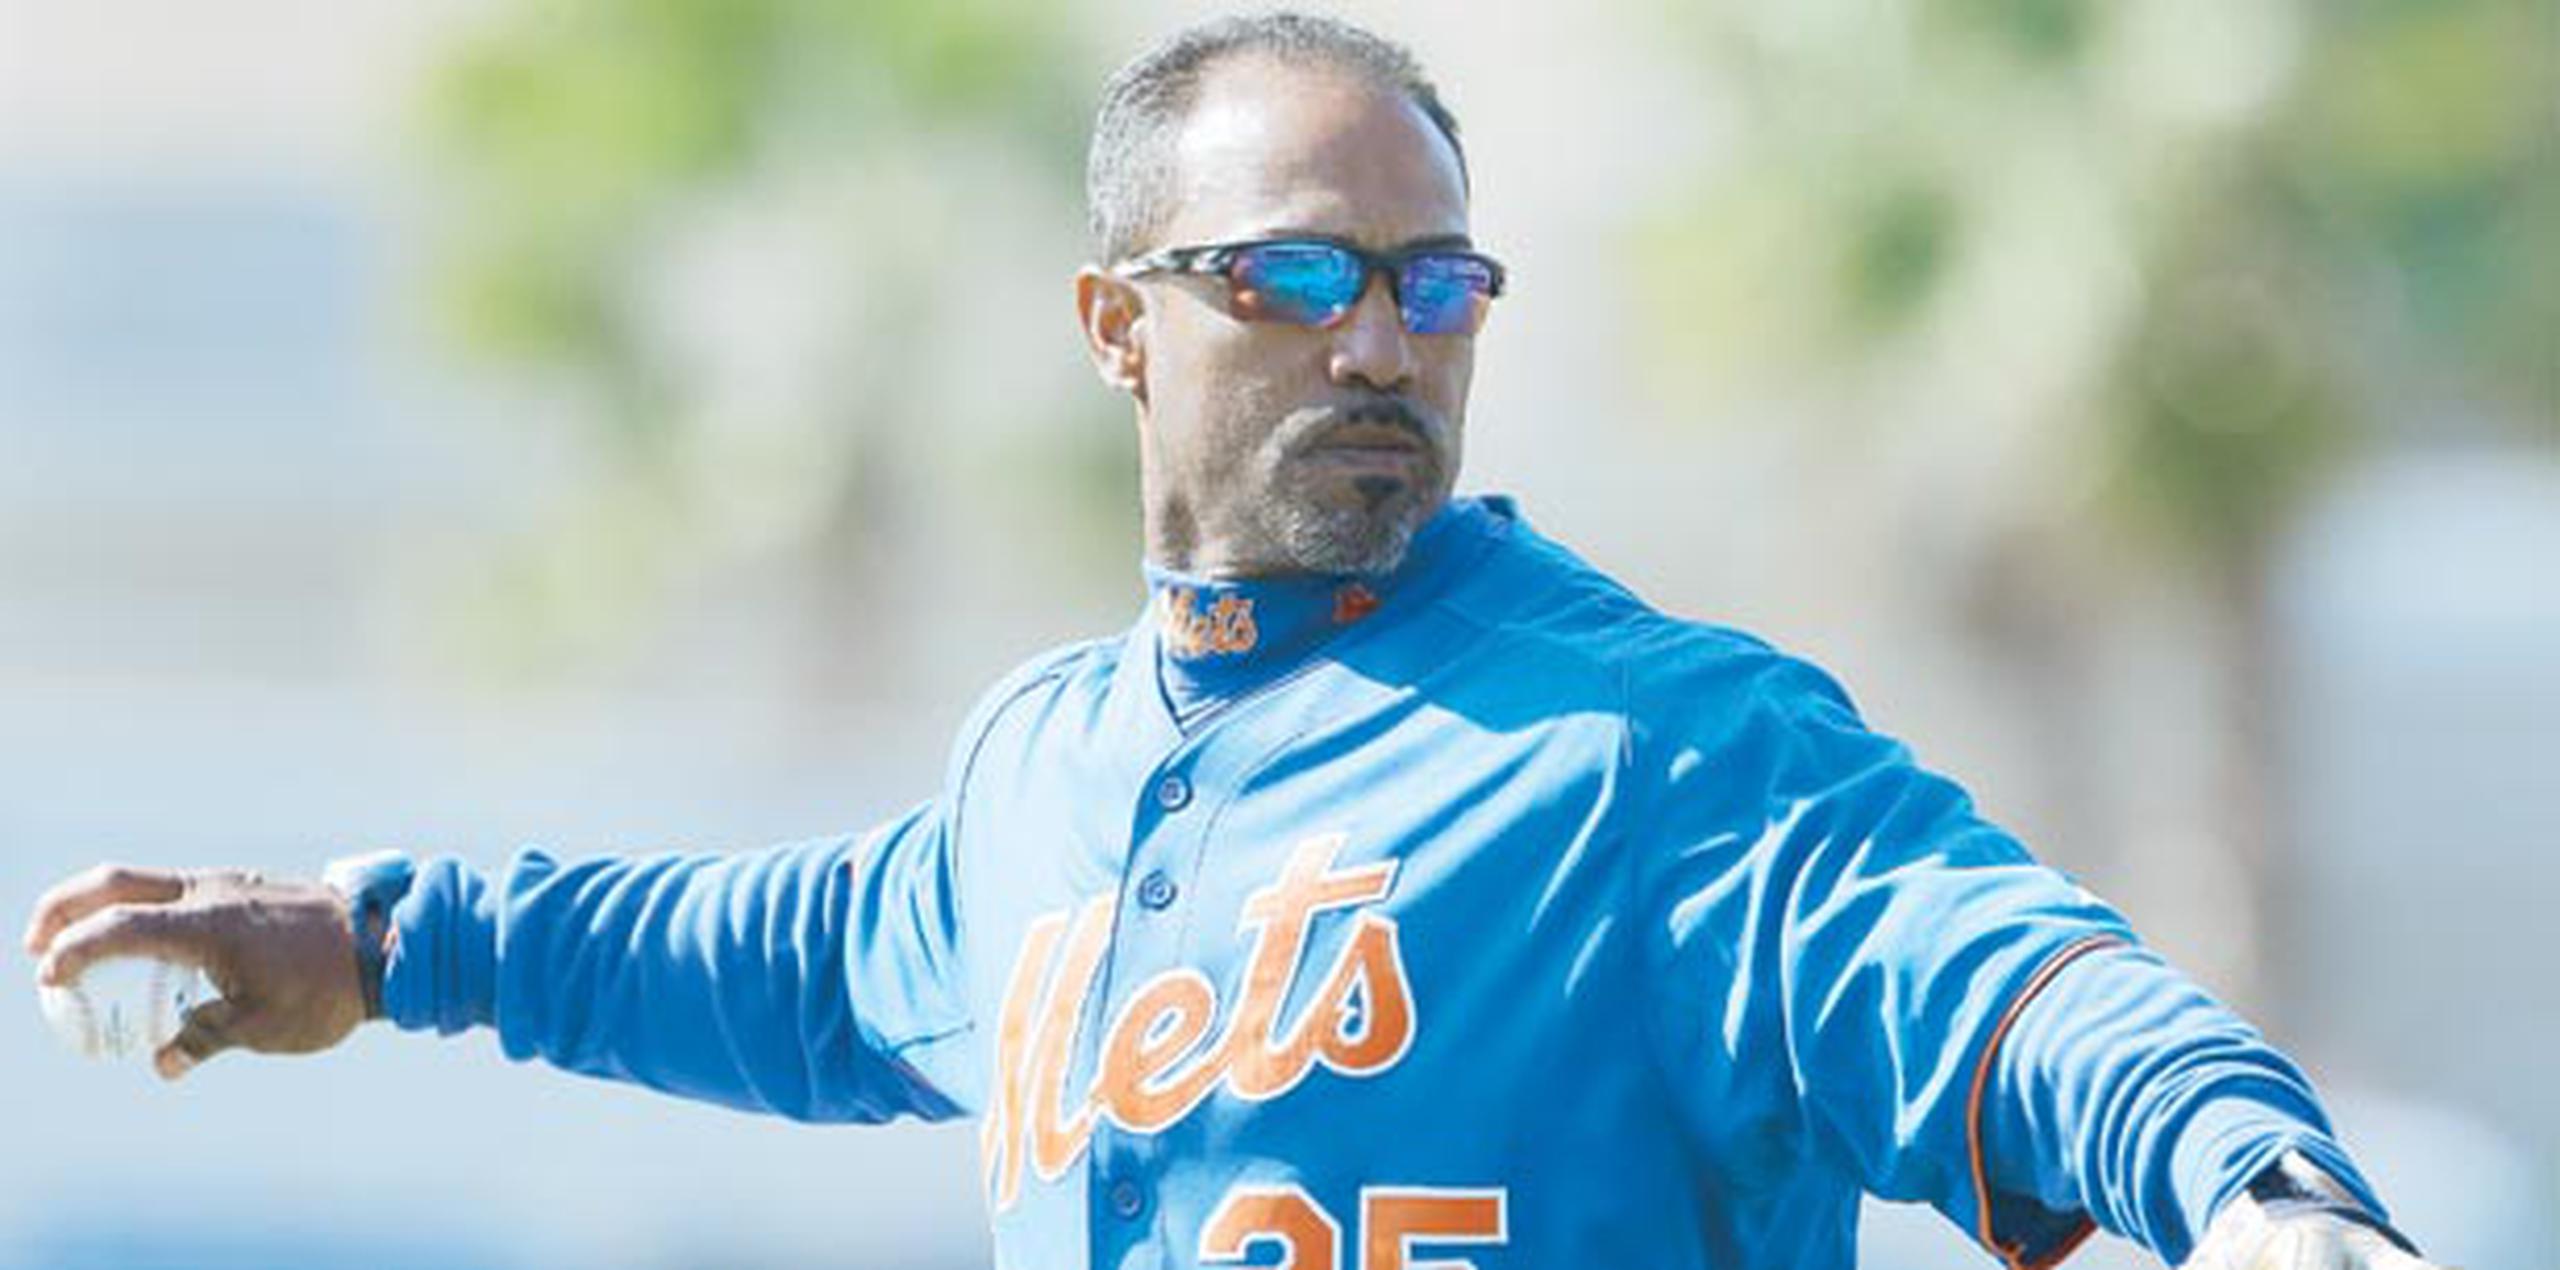 El puertorriqueño Ricky Bones ha trabajado como coach de bullpen de los Mets desde el 2012. (Archivo)